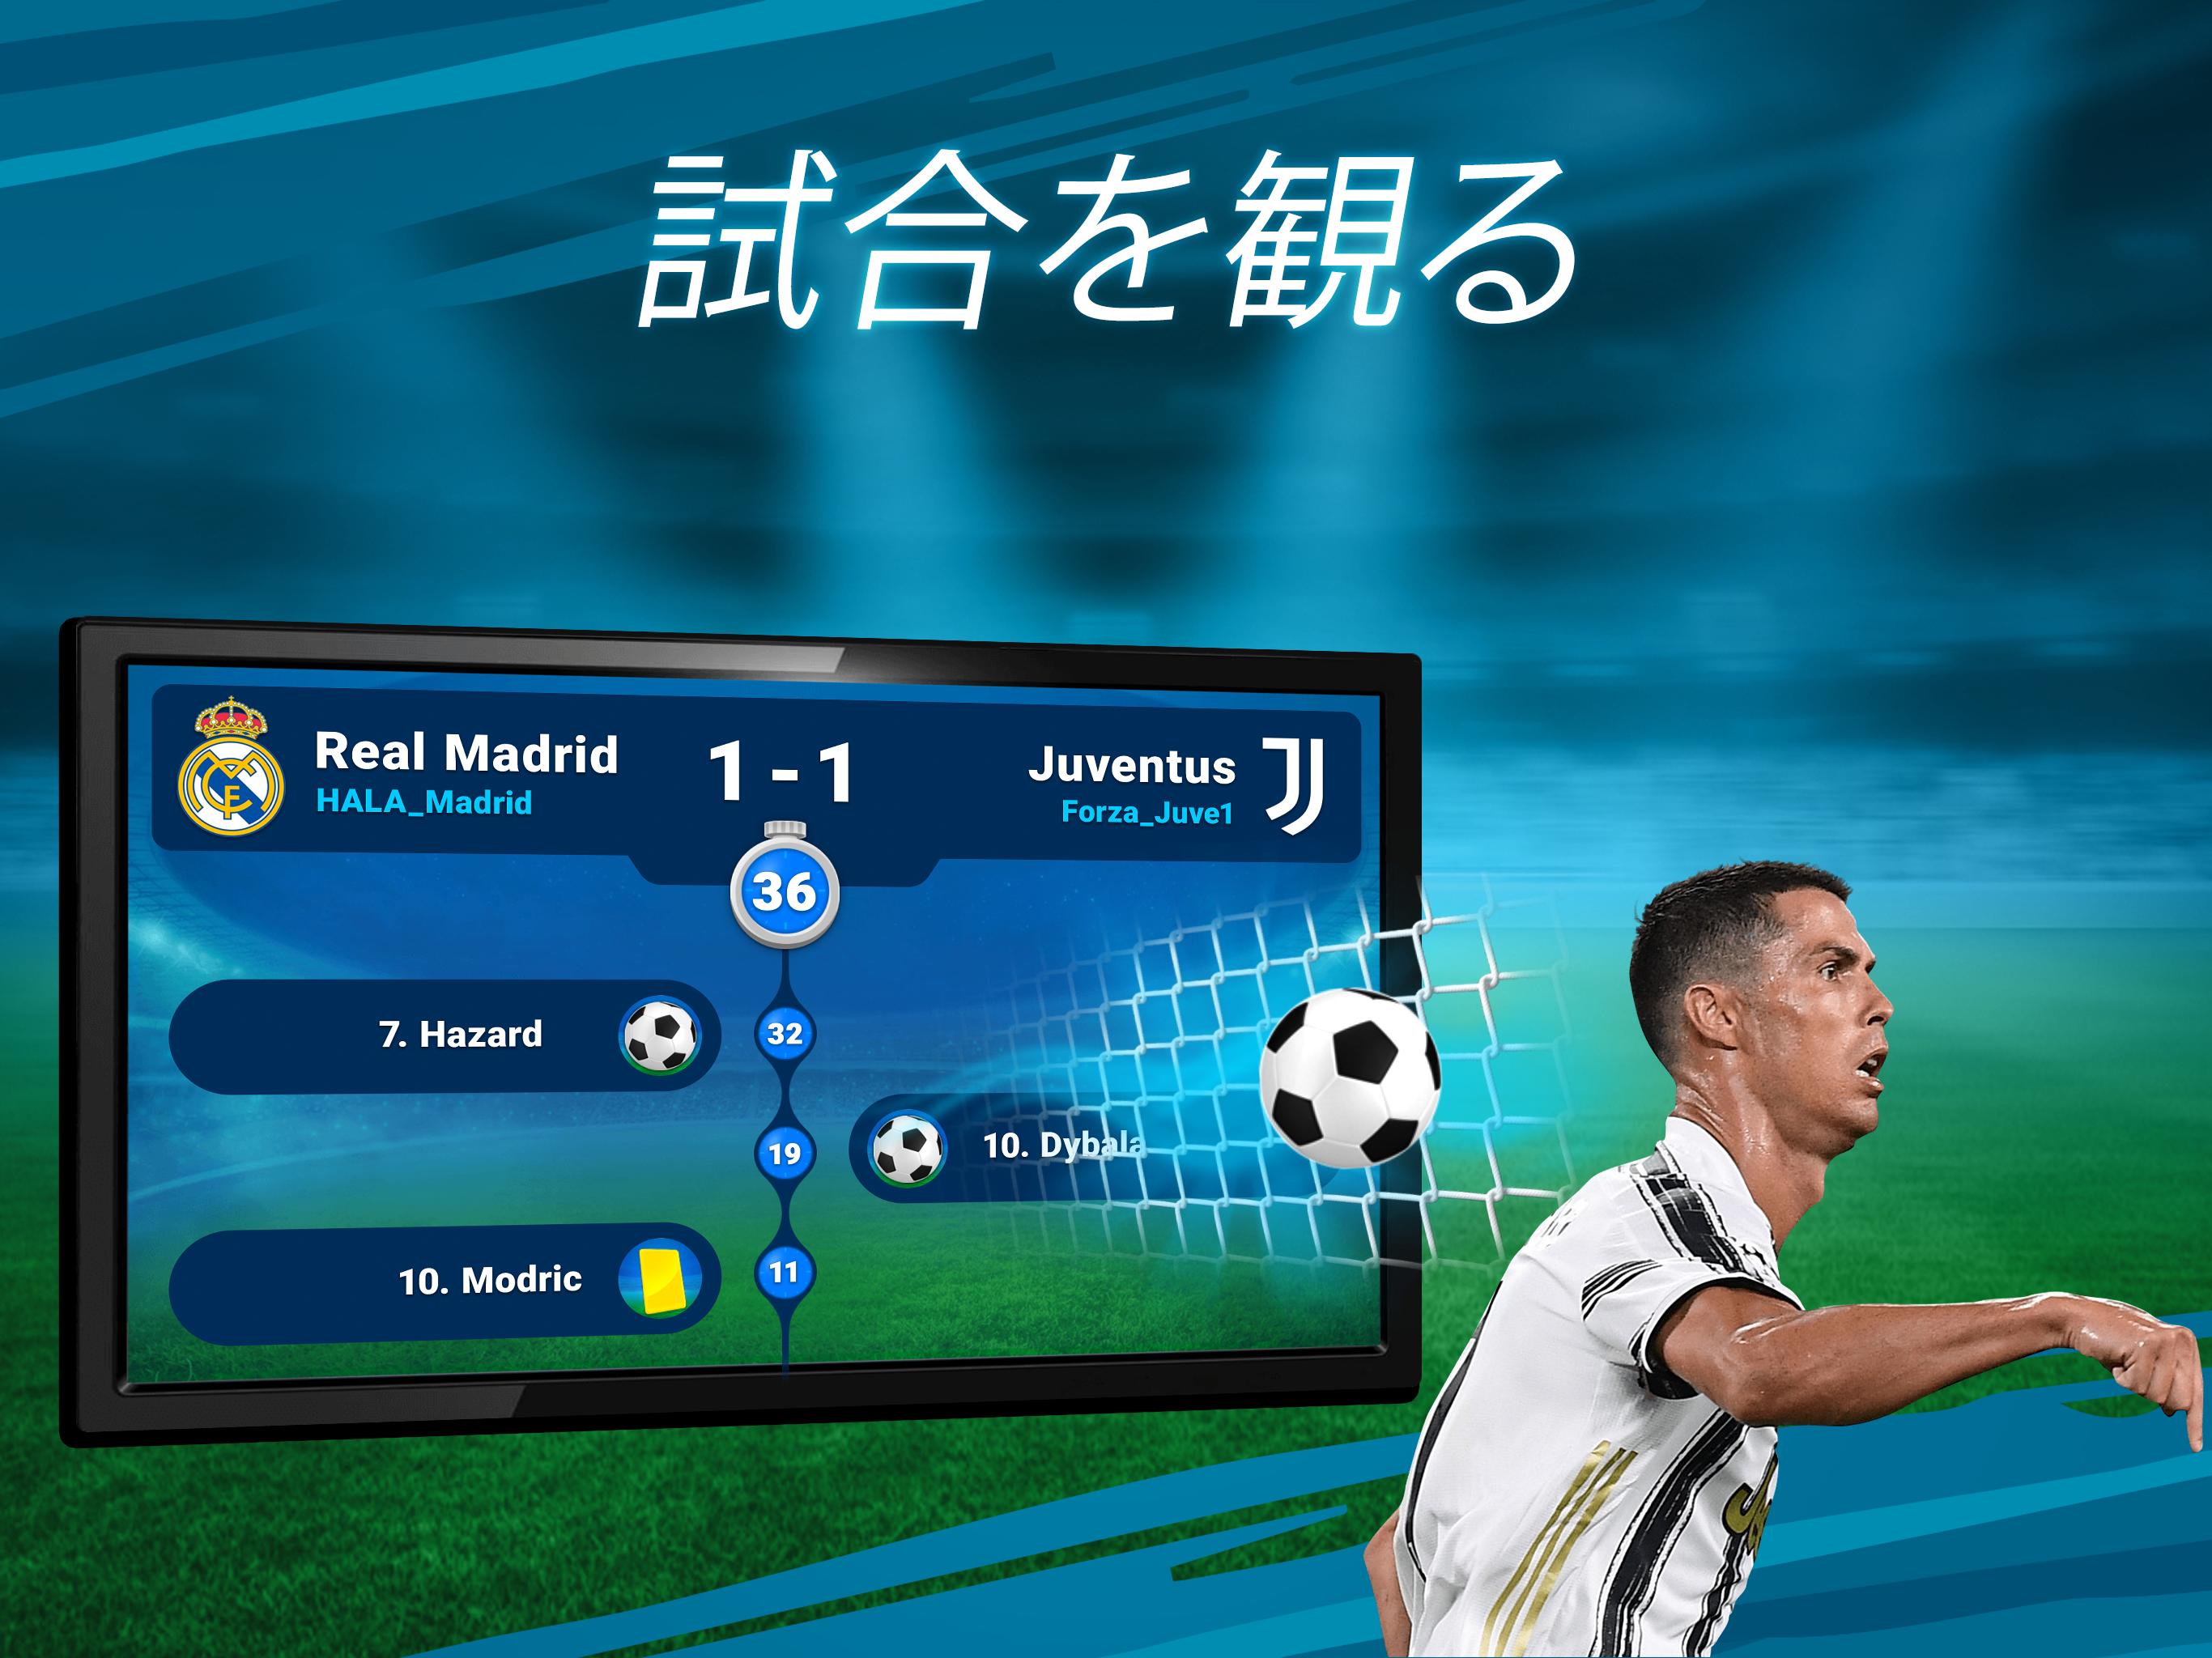 Android 用の オンライン サッカー マネージャー Osm 21 Apk をダウンロード